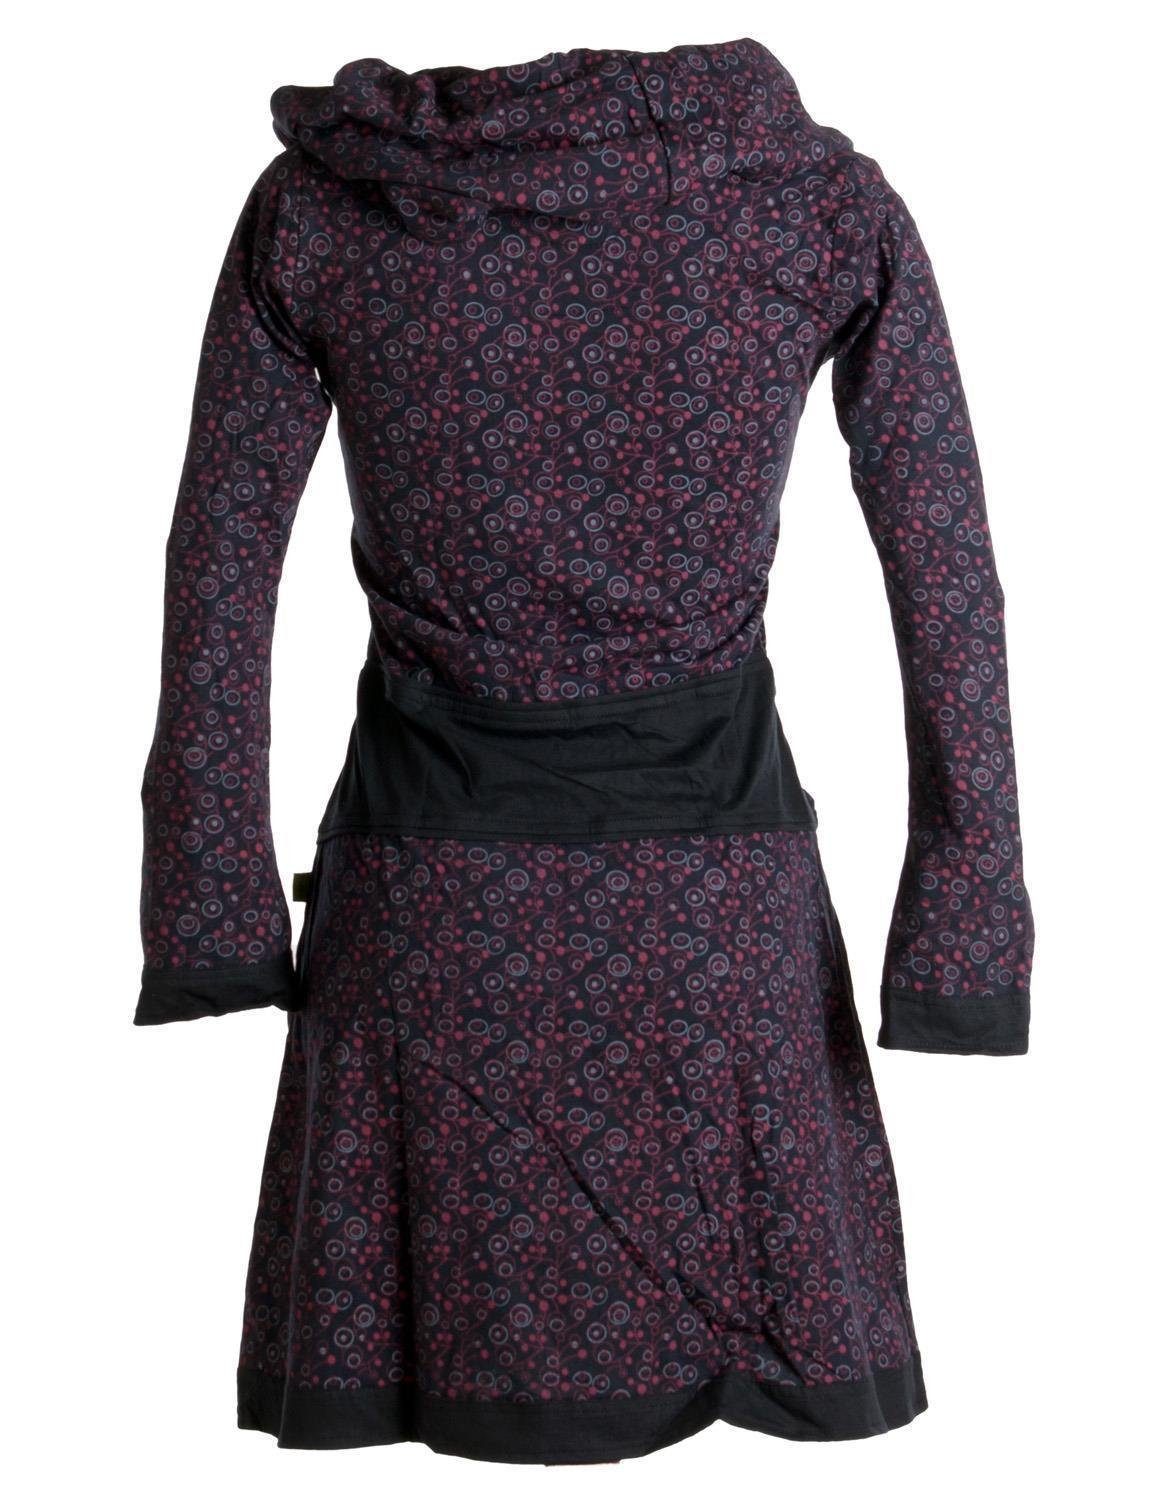 Vishes Jerseykleid Bedrucktes Kleid Schalkragen schwarz-rot mit Ethno, Baumwolle Goa, aus Style Boho, Hippie